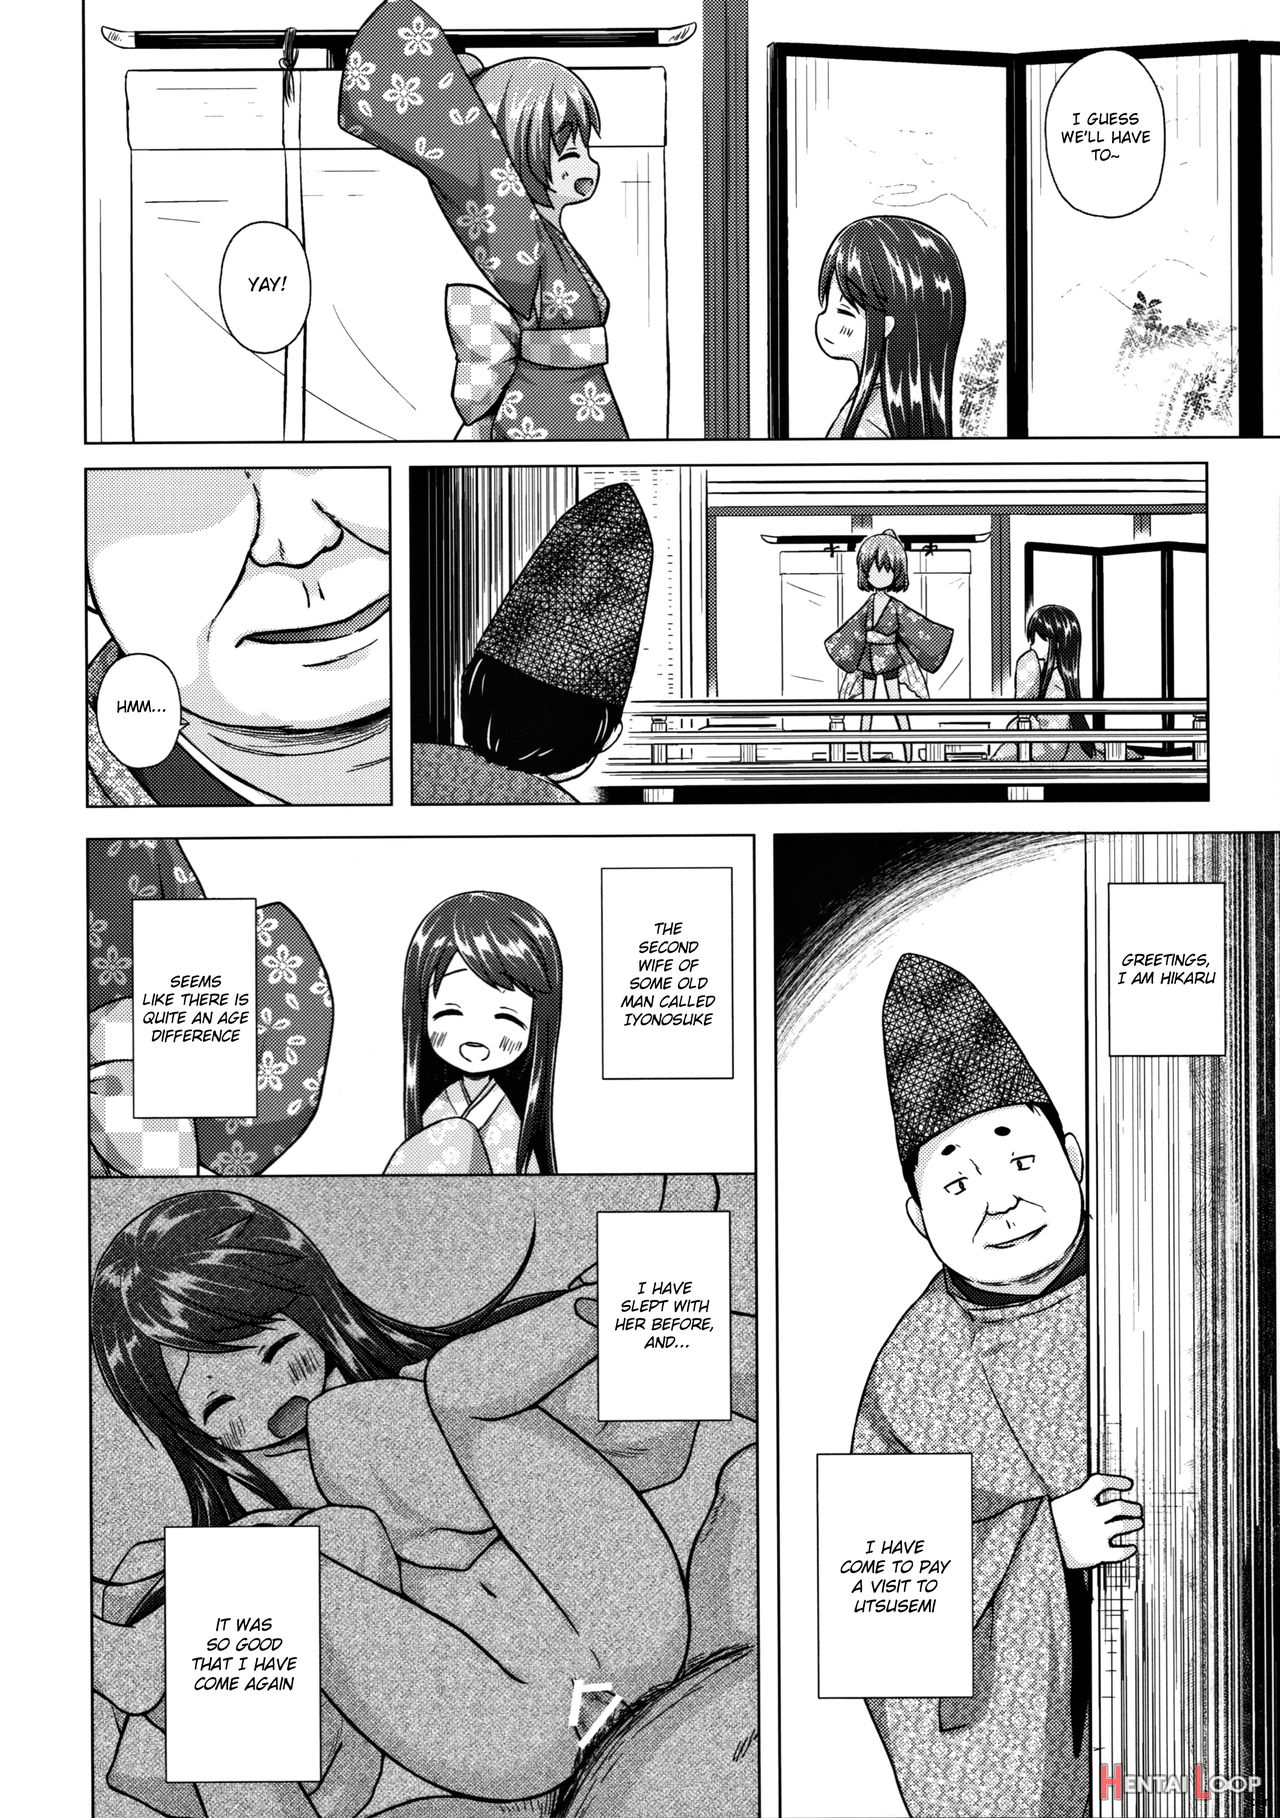 Hikari No Kimi No Saganaki Keikaku <nokiba No Ogi> page 3